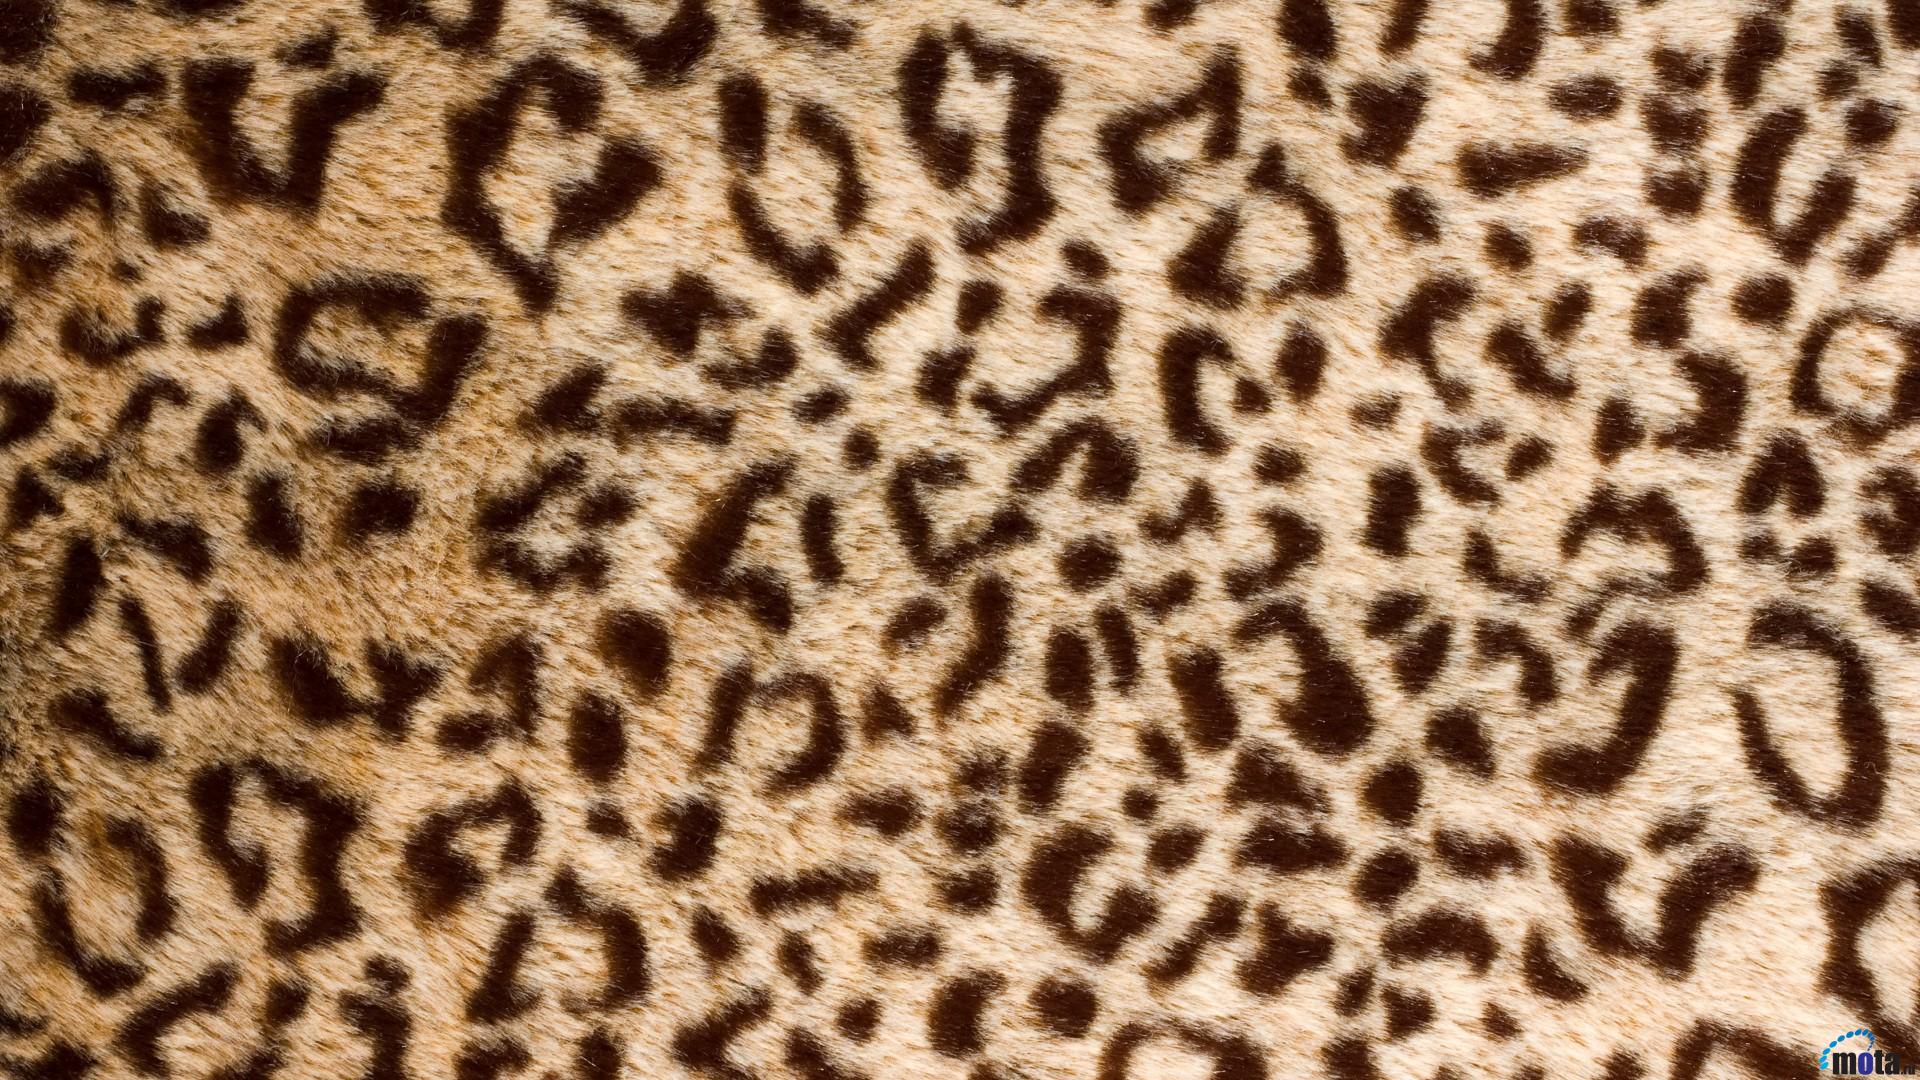 1920x1080 > Leopard Skin Wallpapers